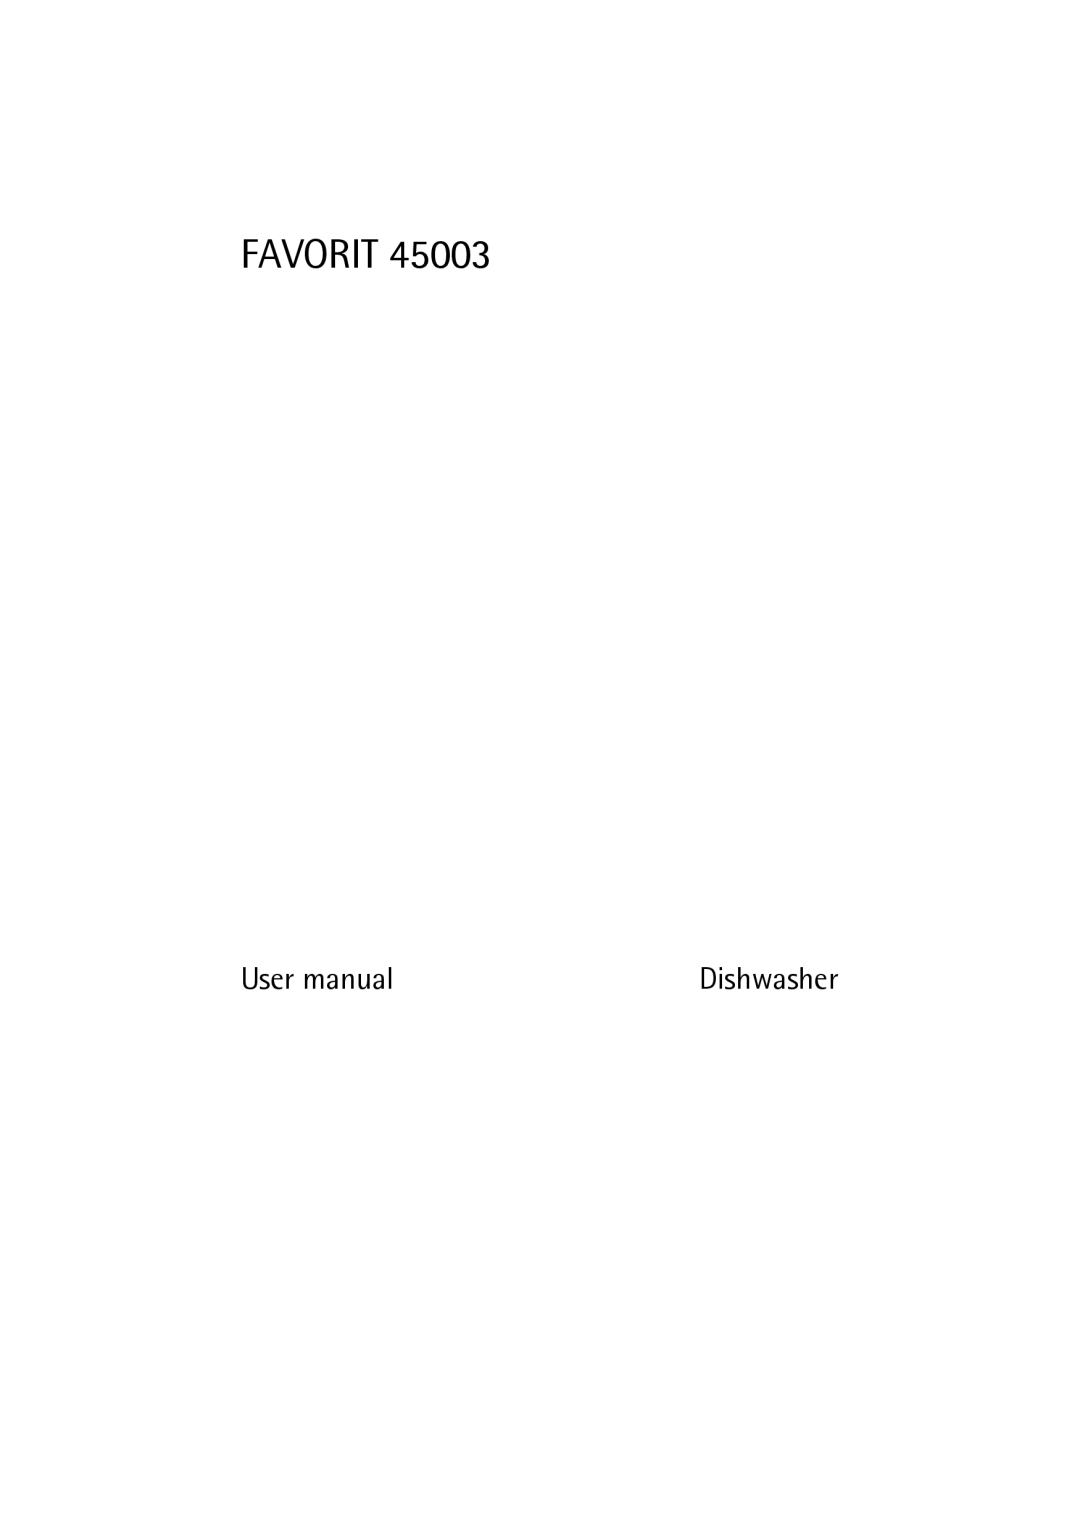 AEG 45003 user manual Favorit, Dishwasher 